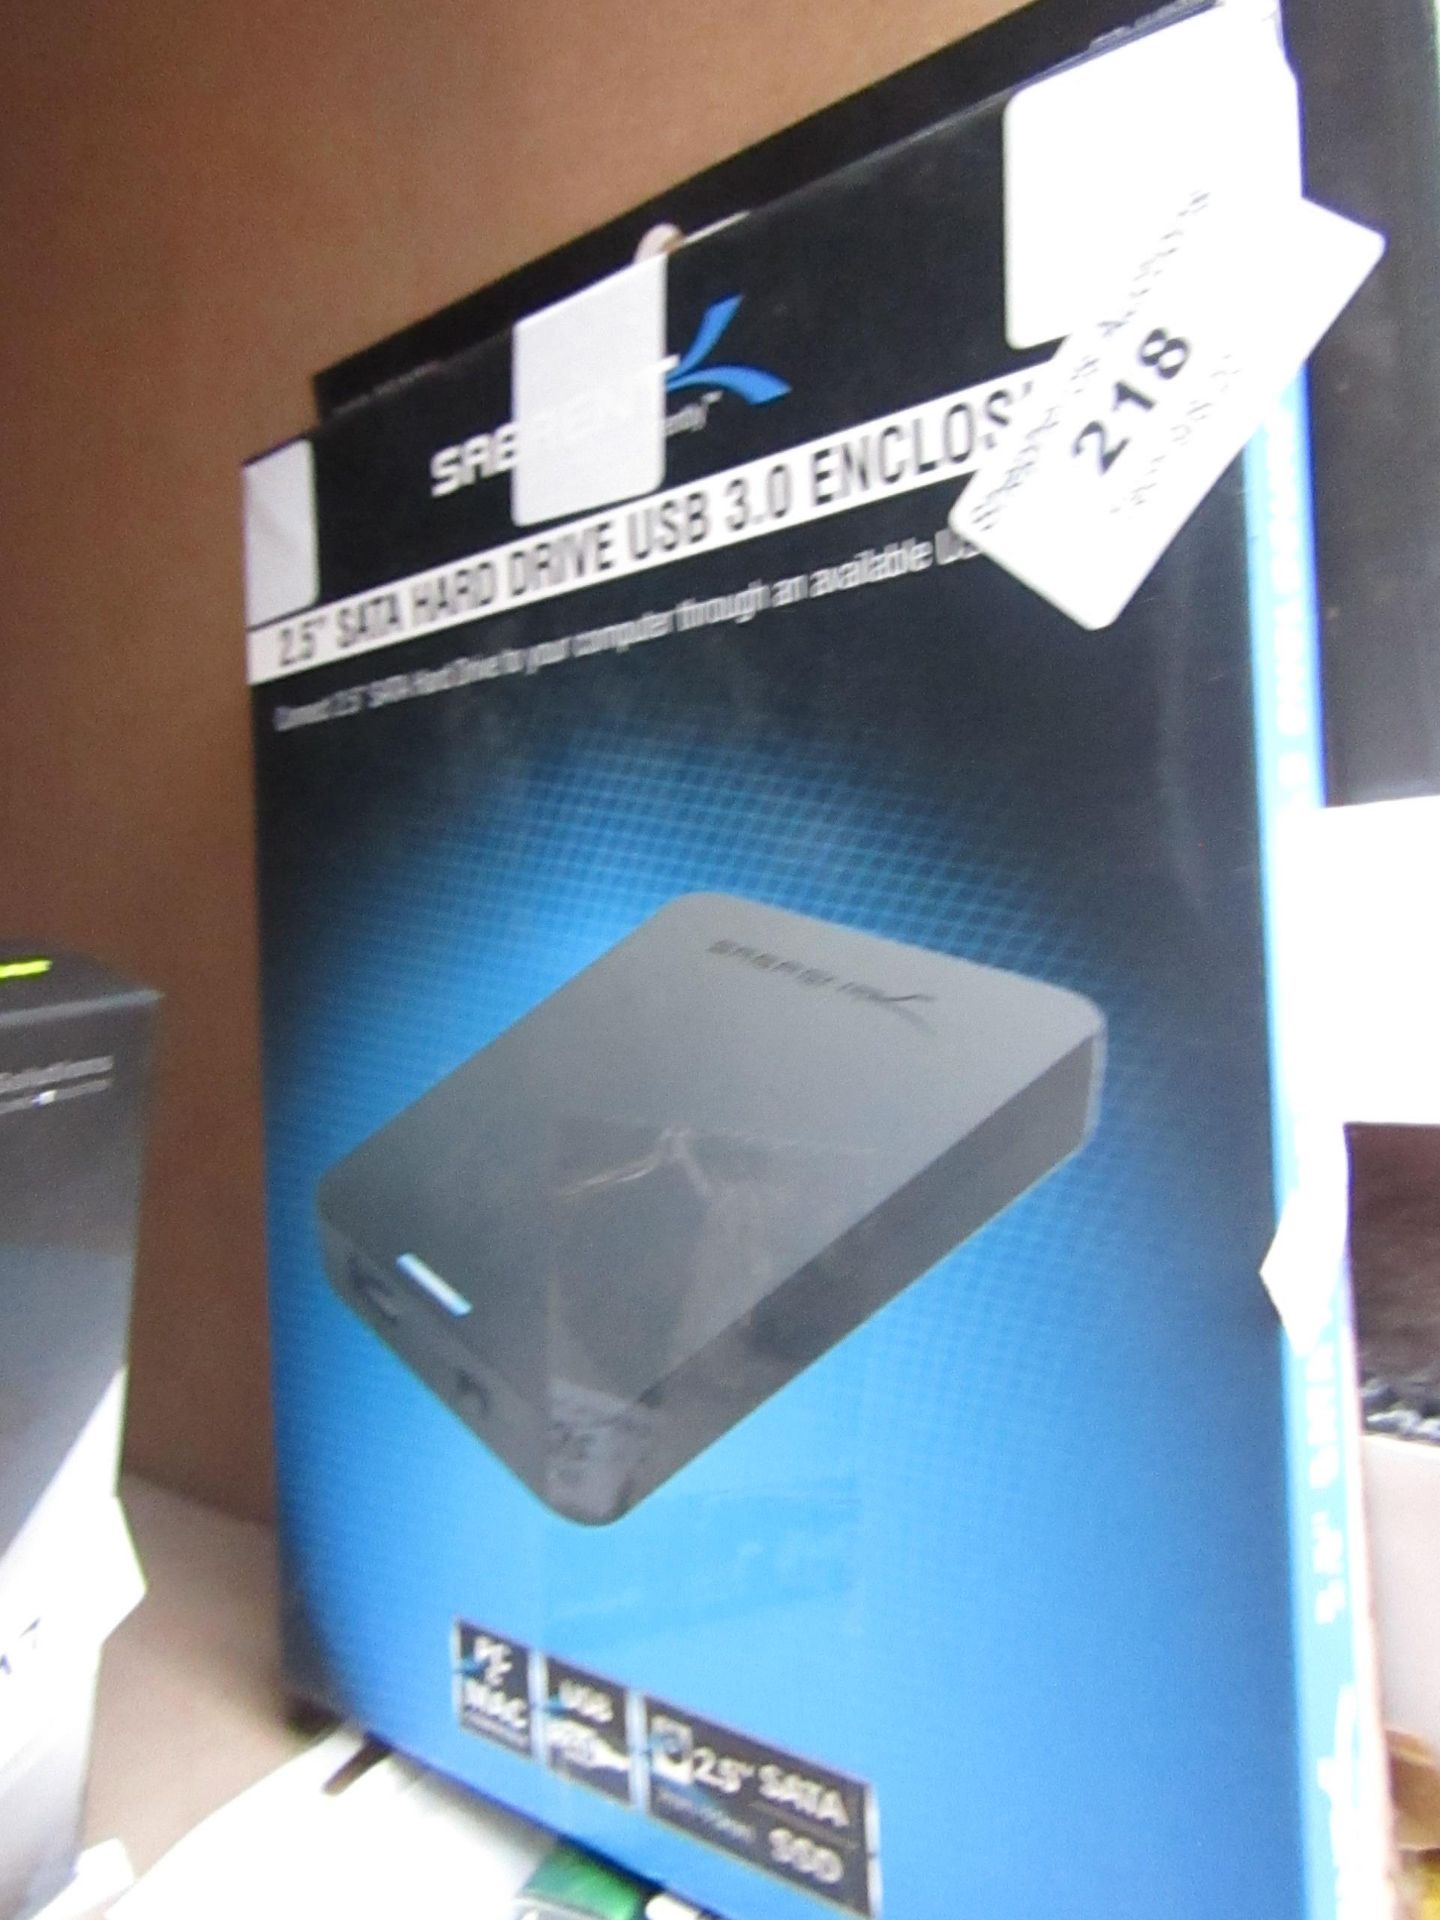 Sabrent 2.5" SATA Hard drive USB 3.0 Enclosure, boxed and unchecked